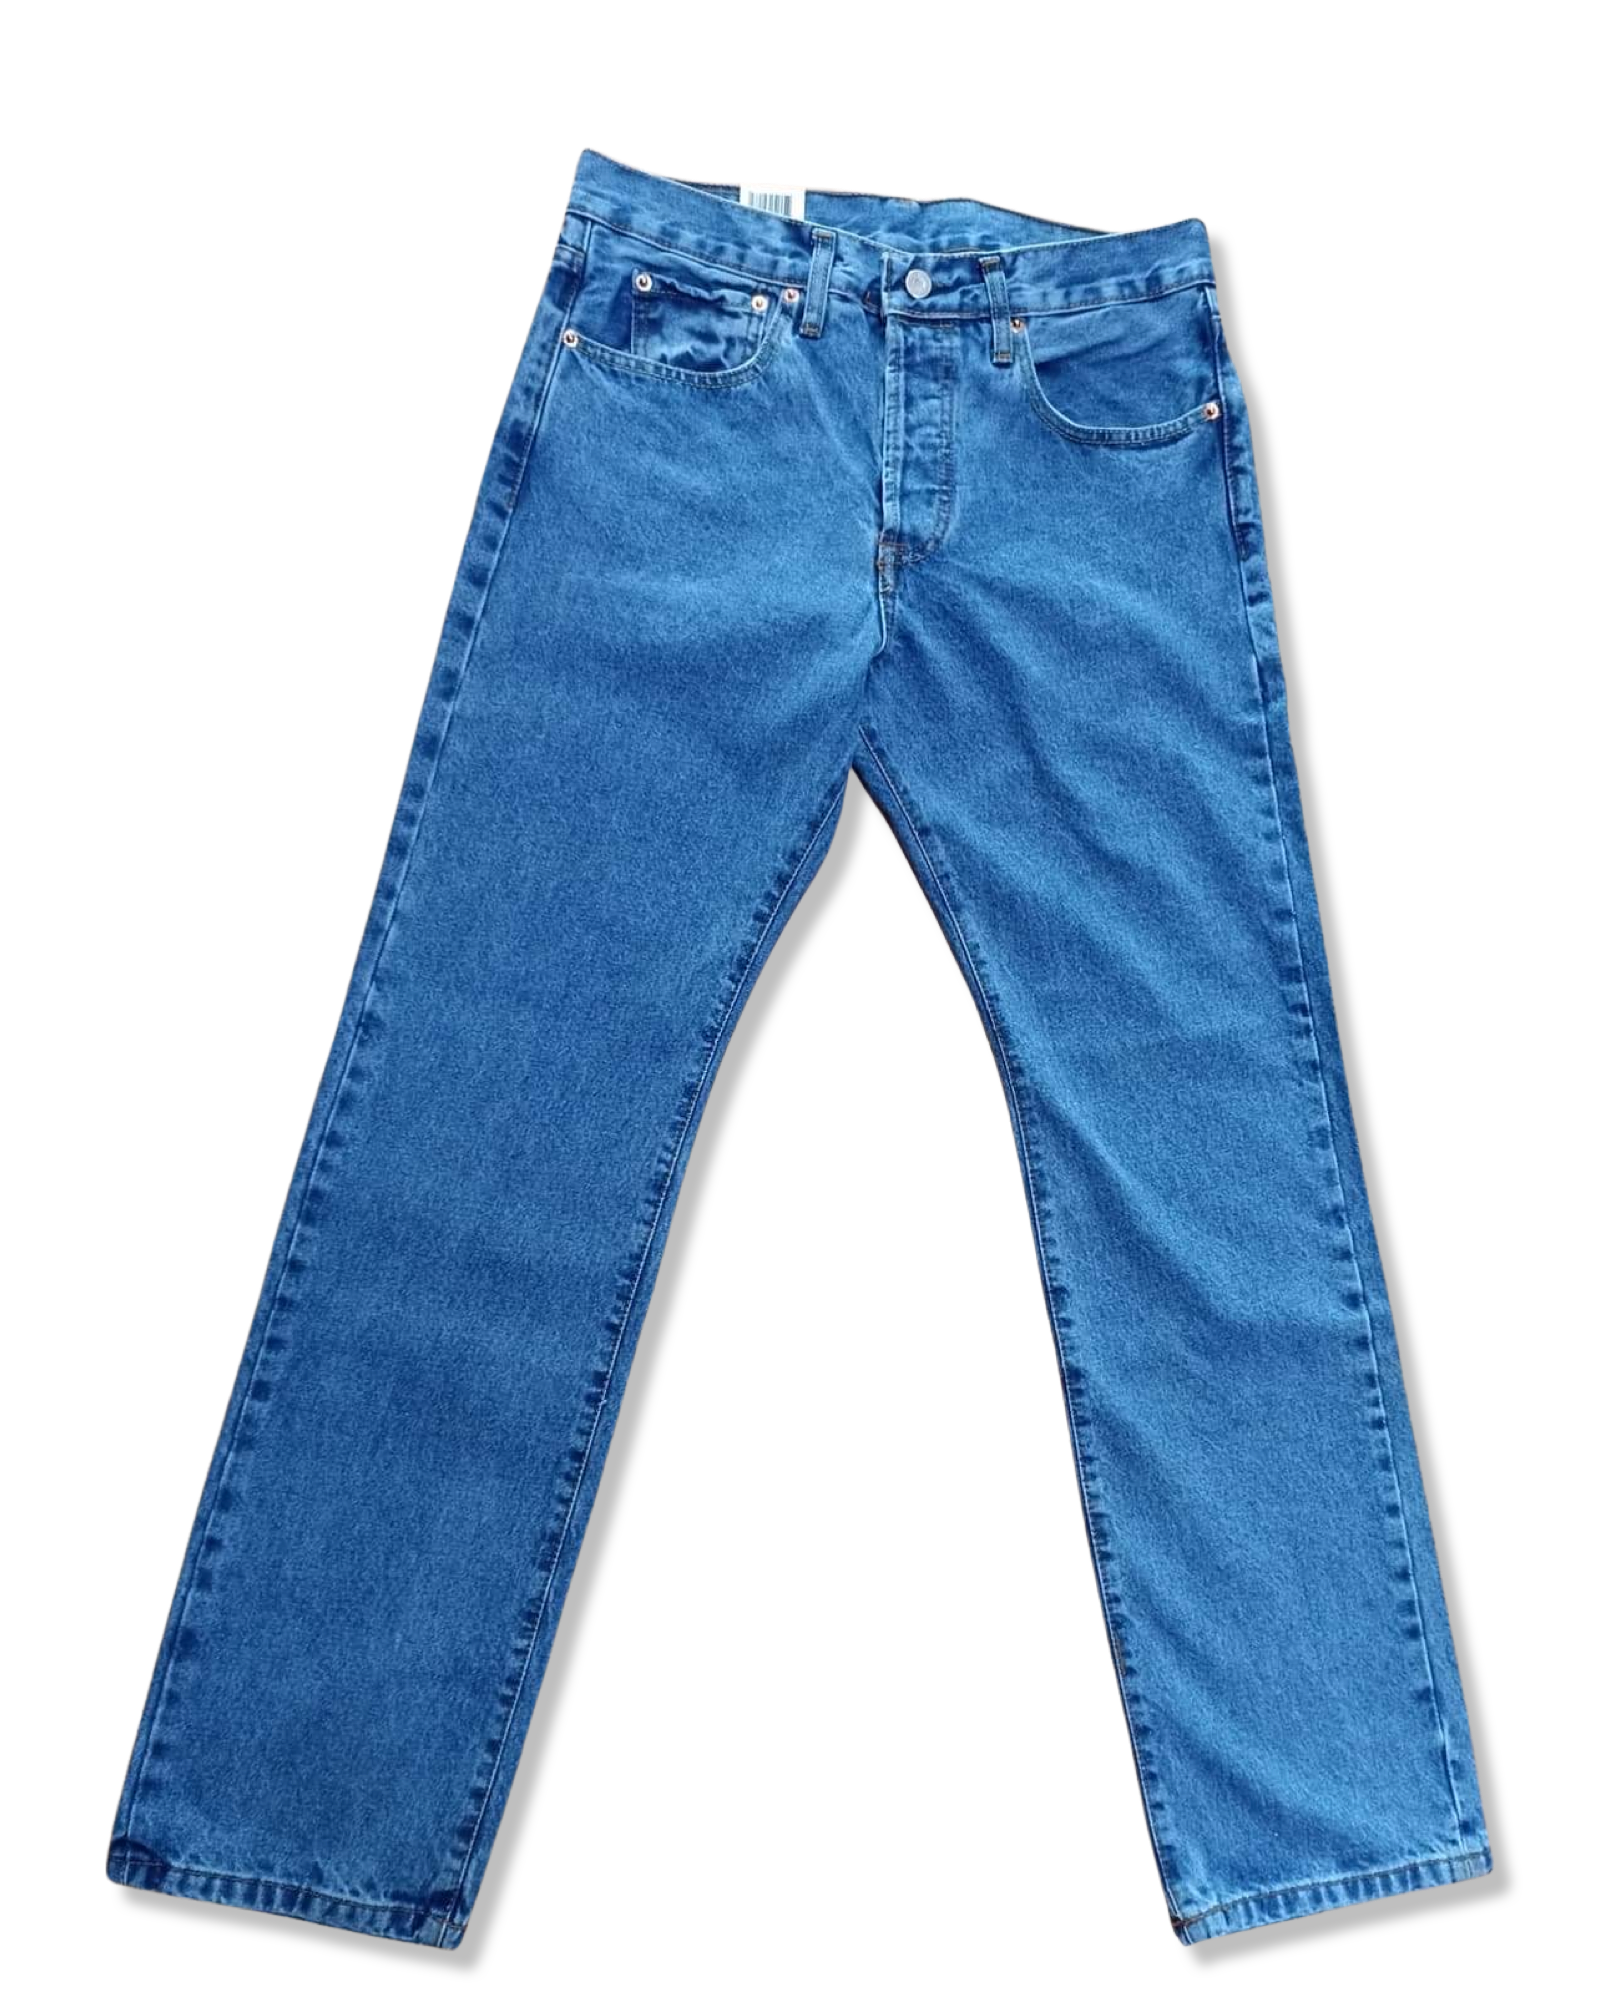 Pantalón LEVIS 501 color azul vaquero elegante